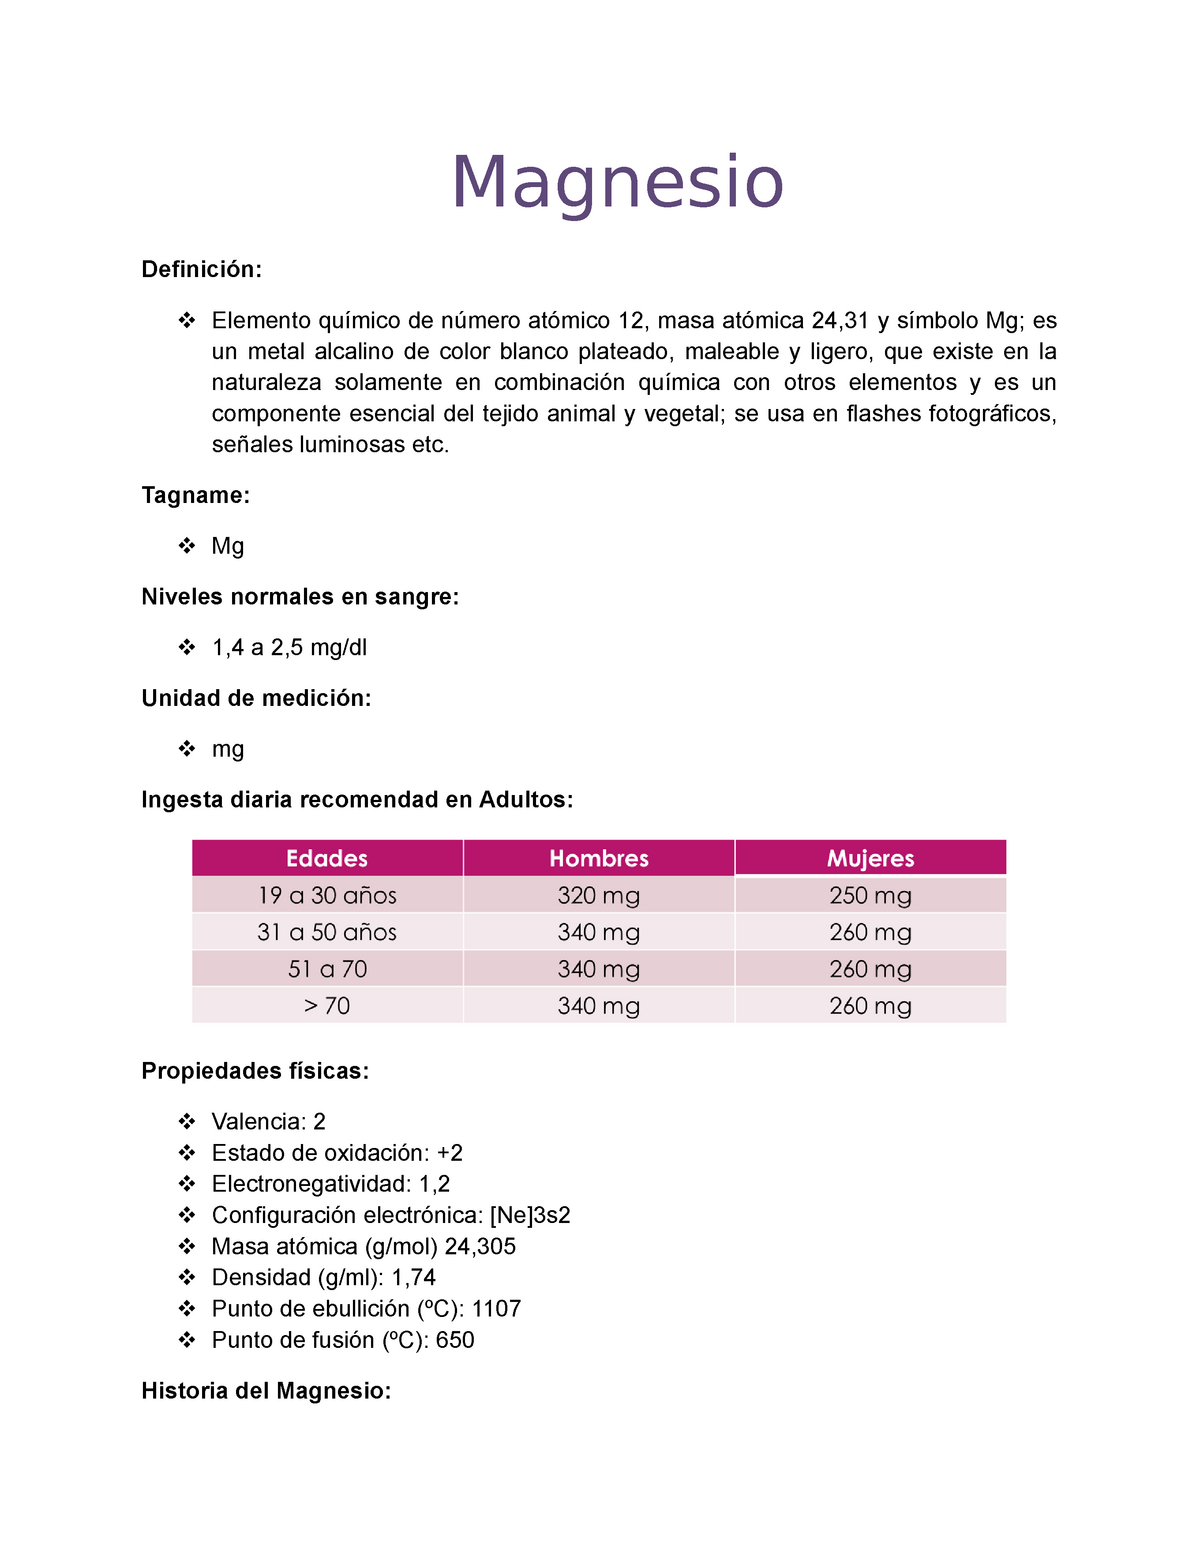 Magnesio - Magnesio Definición:  químico de número atómico 12, masa atómica 24,31 y - Studocu